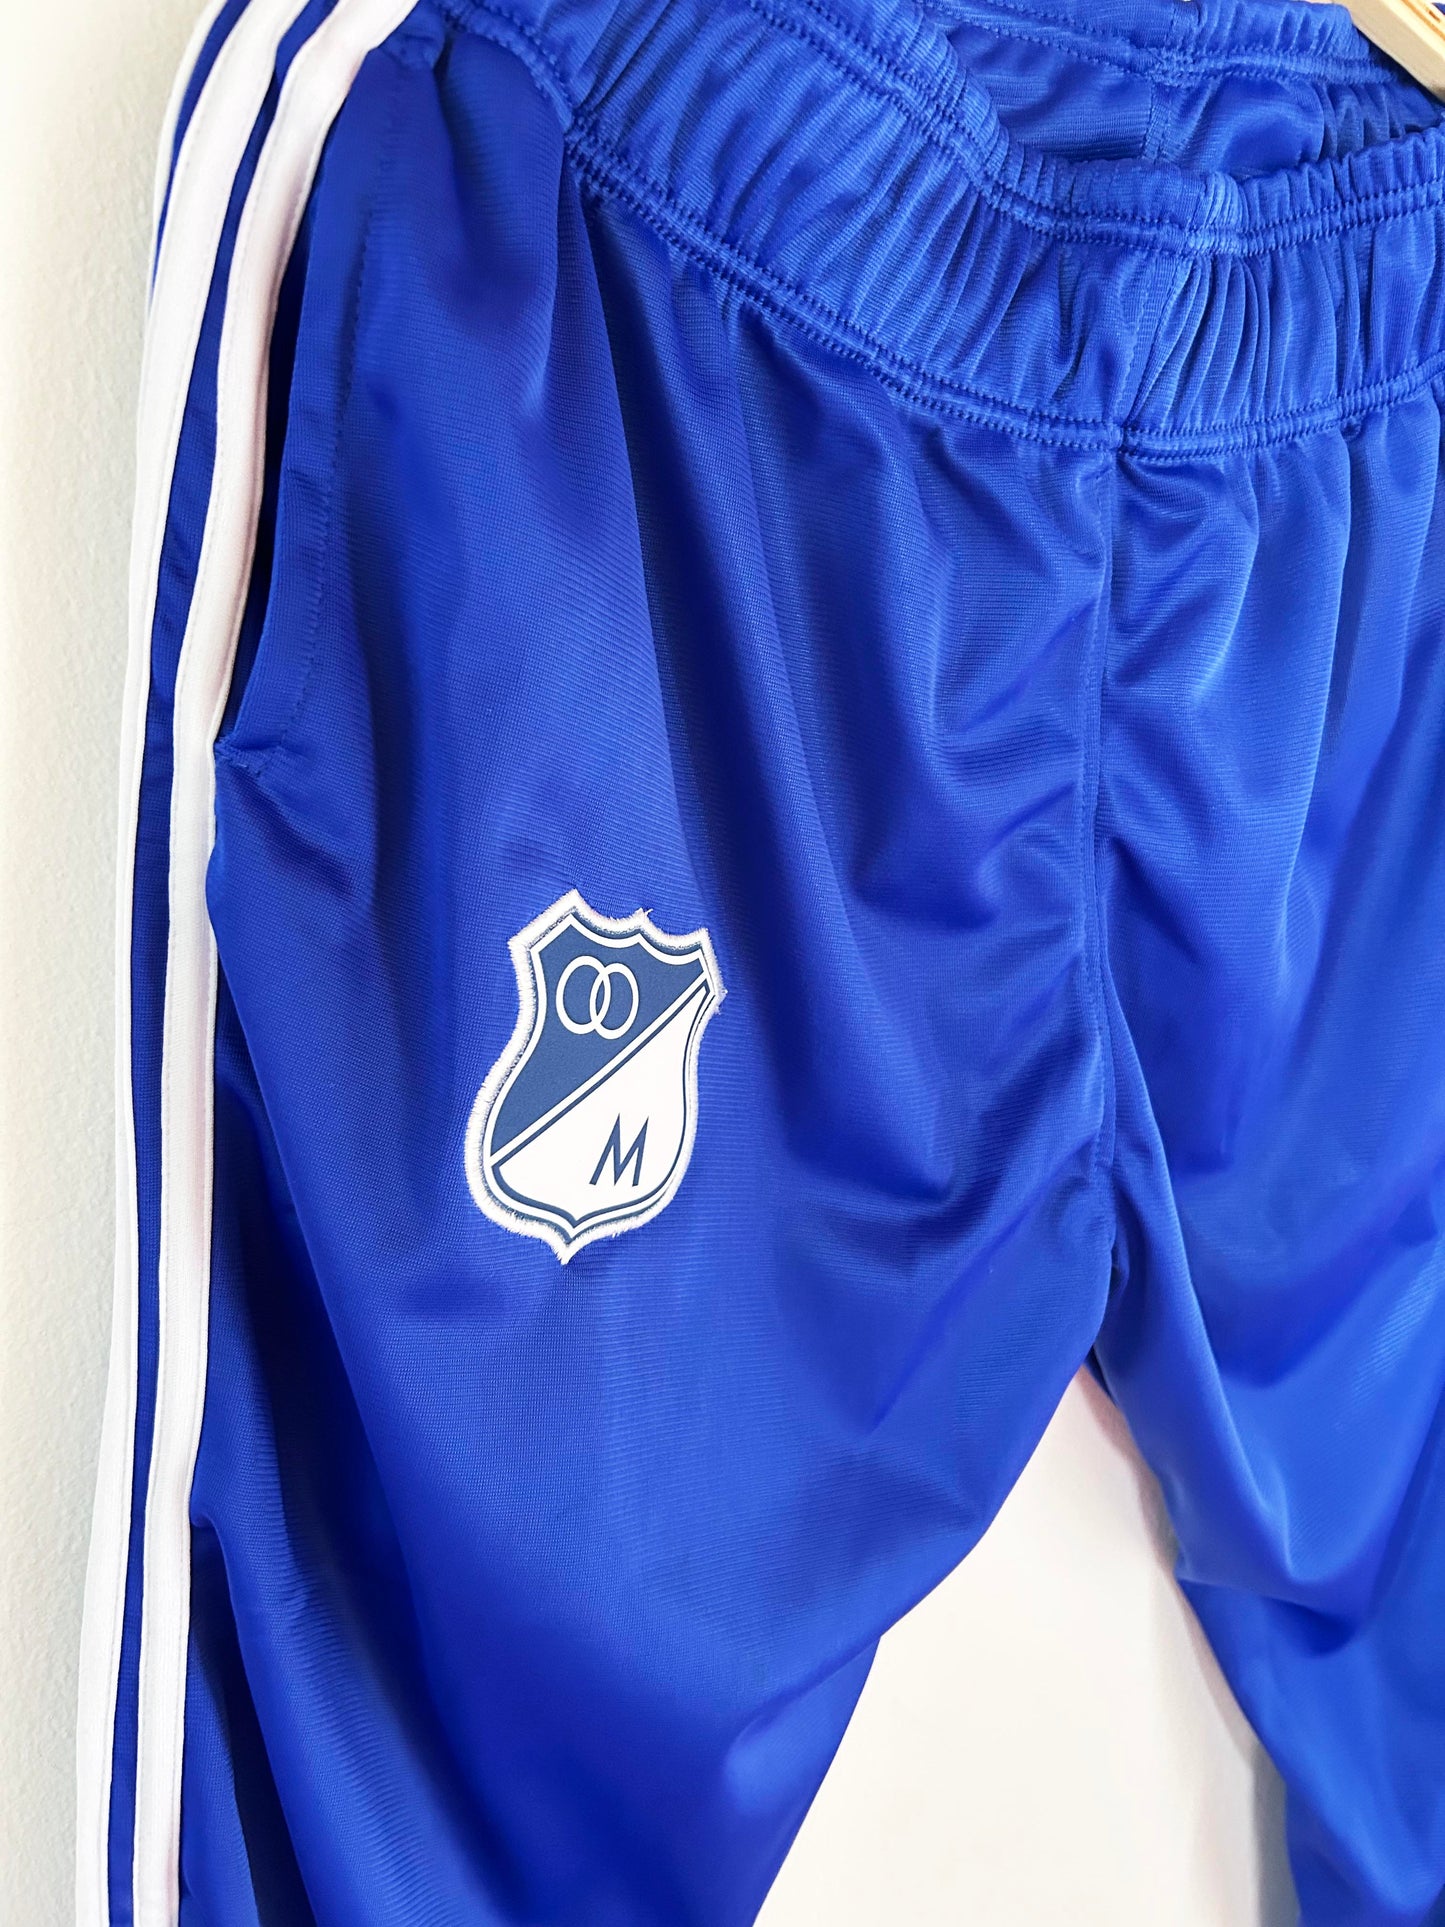 Pantalón de Sudadera Millonarios Azul Adidas Retro